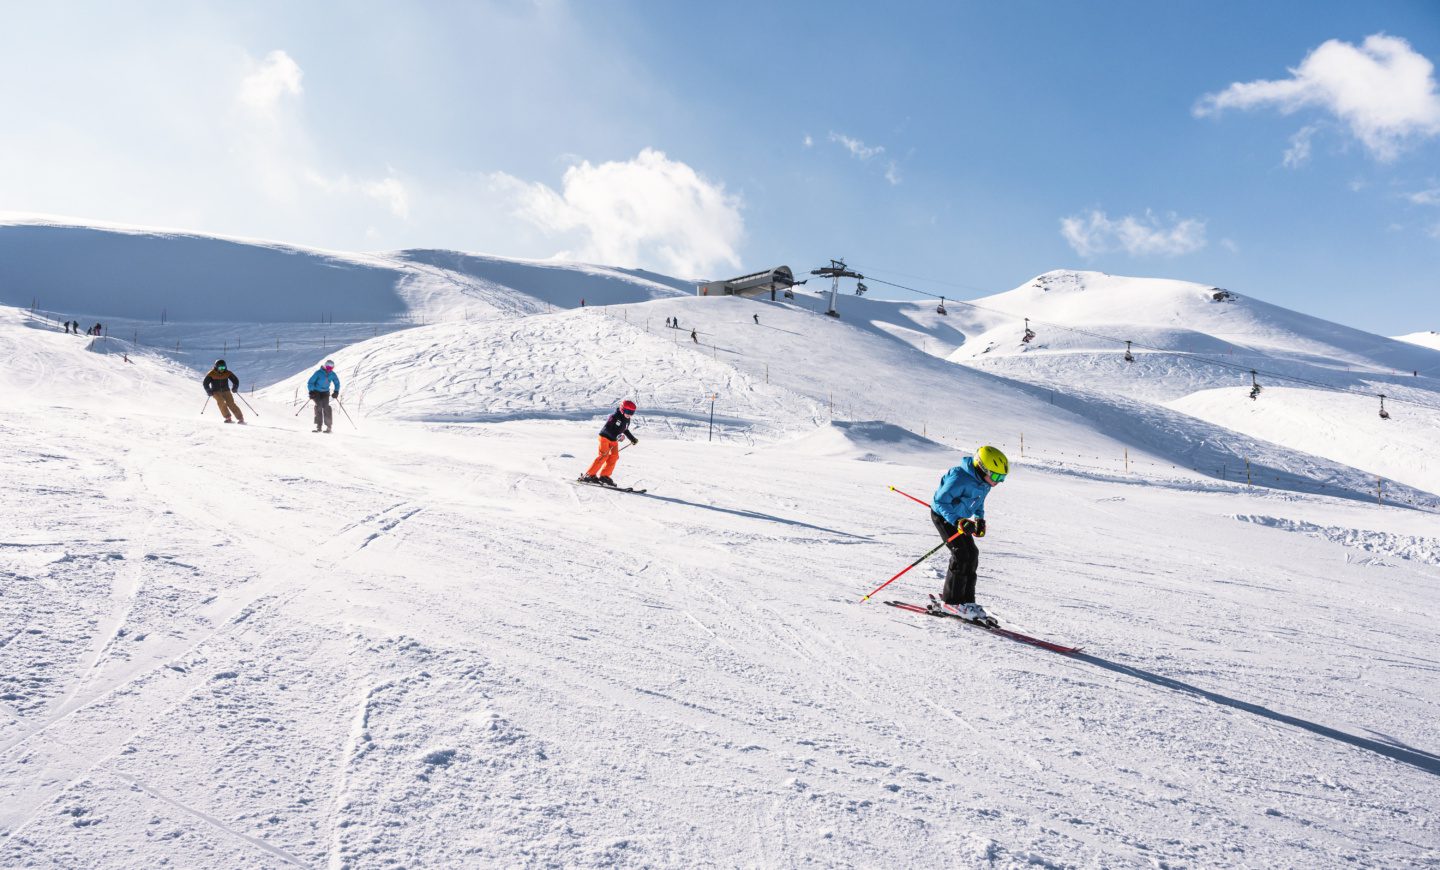 Melchsee-Frutt Skisport